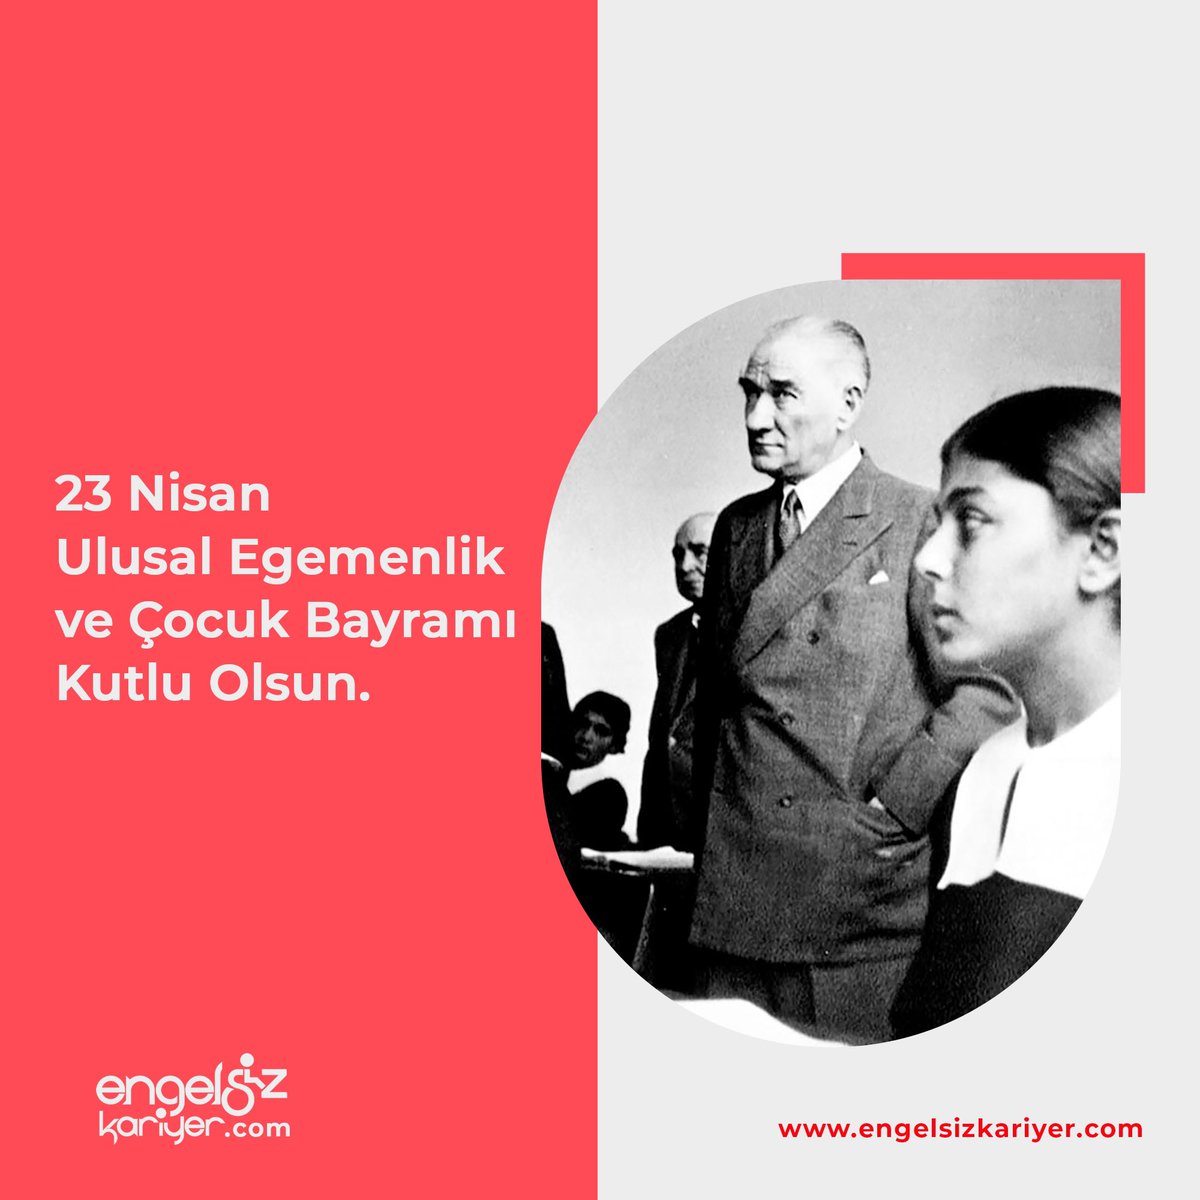 Kapsayıcı, erişilebilir, sürdürülebilir ve tüm eşitsizliklerin ortadan kalktığı bir dünya dileği ile 23 Nisan Ulusal Eğemenlik ve Çocuk Bayramımız Kutlu Olsun. #Atatürk #23Nisan #engelsizkariyer #engelliistihdamı